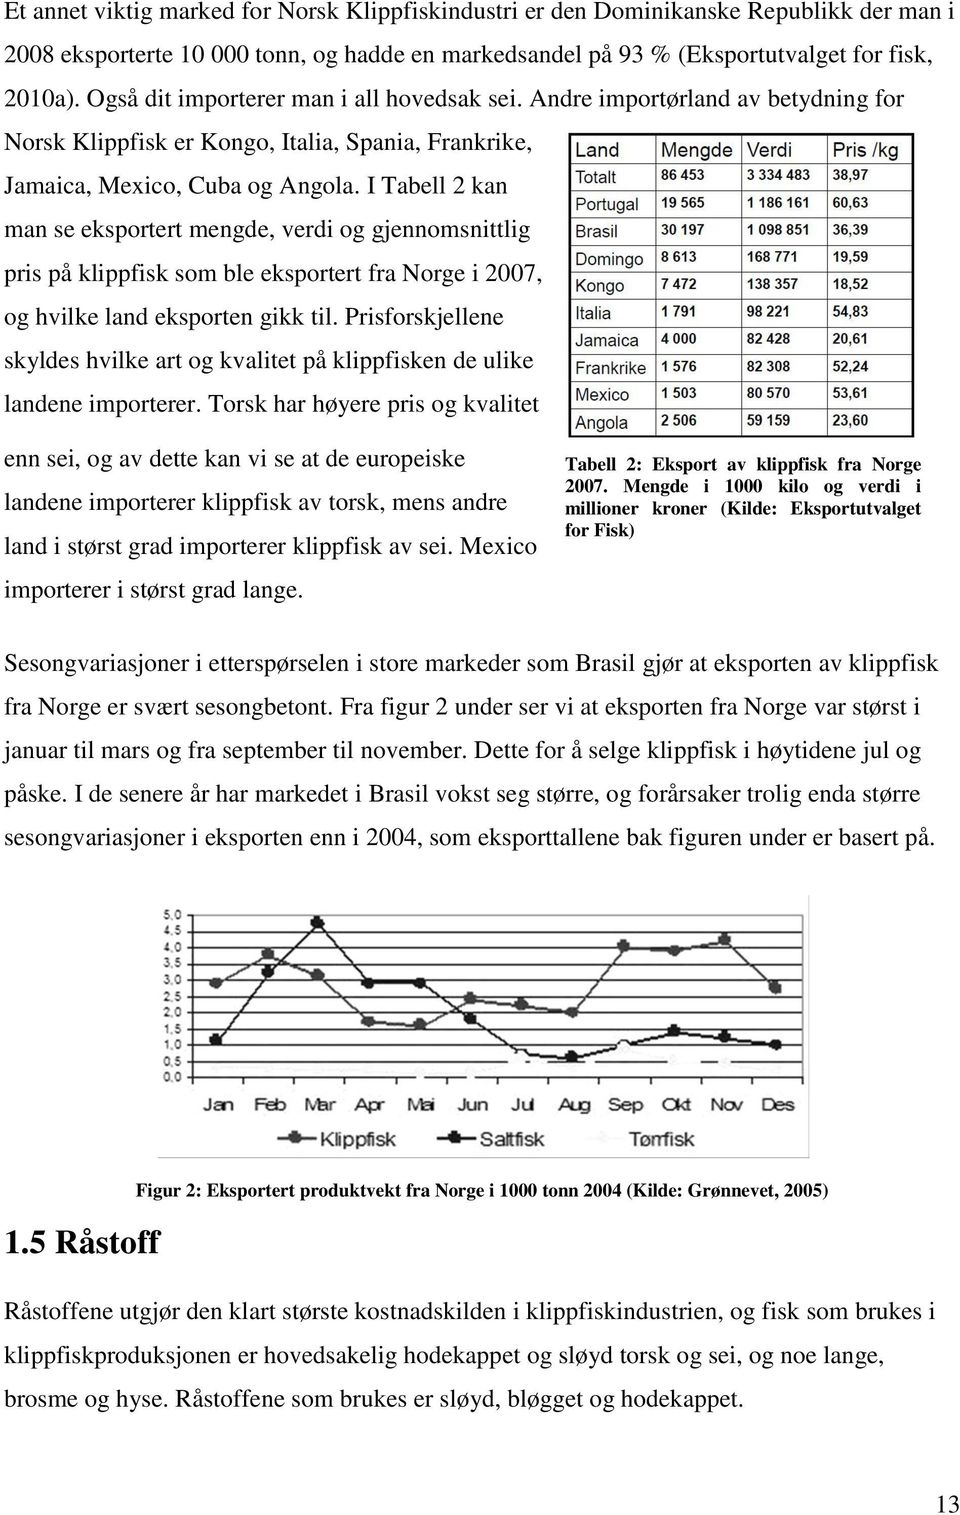 I Tabell 2 kan man se eksportert mengde, verdi og gjennomsnittlig pris på klippfisk som ble eksportert fra Norge i 2007, og hvilke land eksporten gikk til.